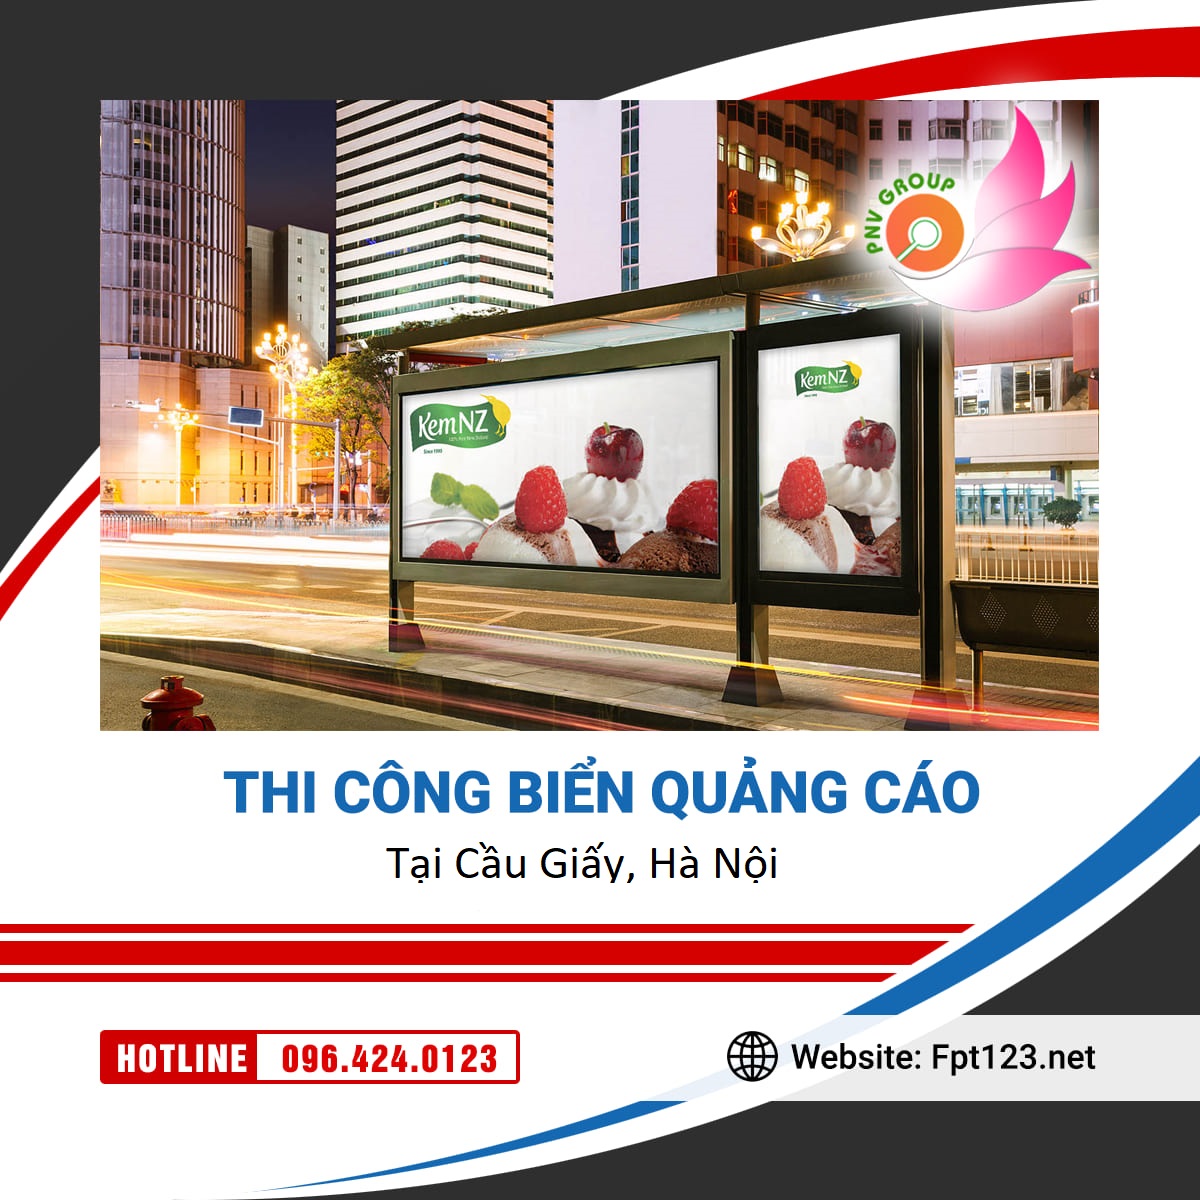 Thiết kế, thi công biển quảng cáo quận Cầu Giấy, Hà Nội